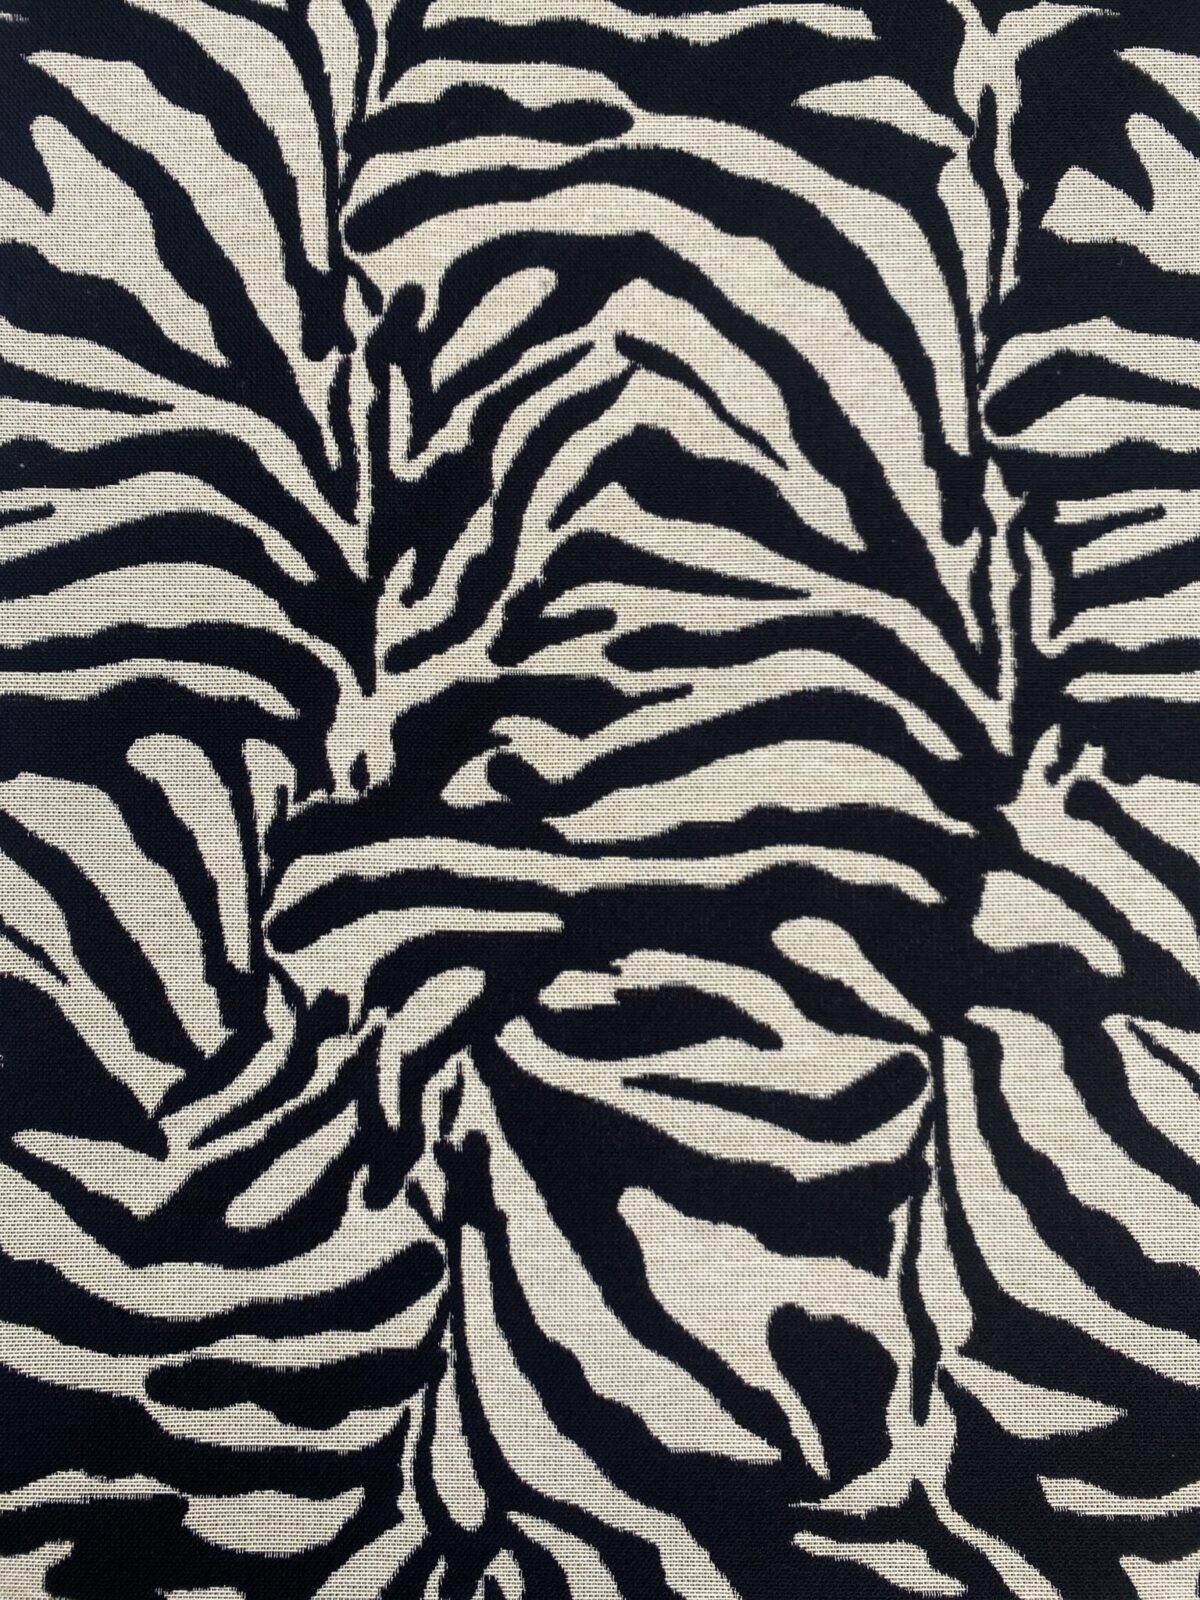 Gobelin boligtekstil med Zebra mønster